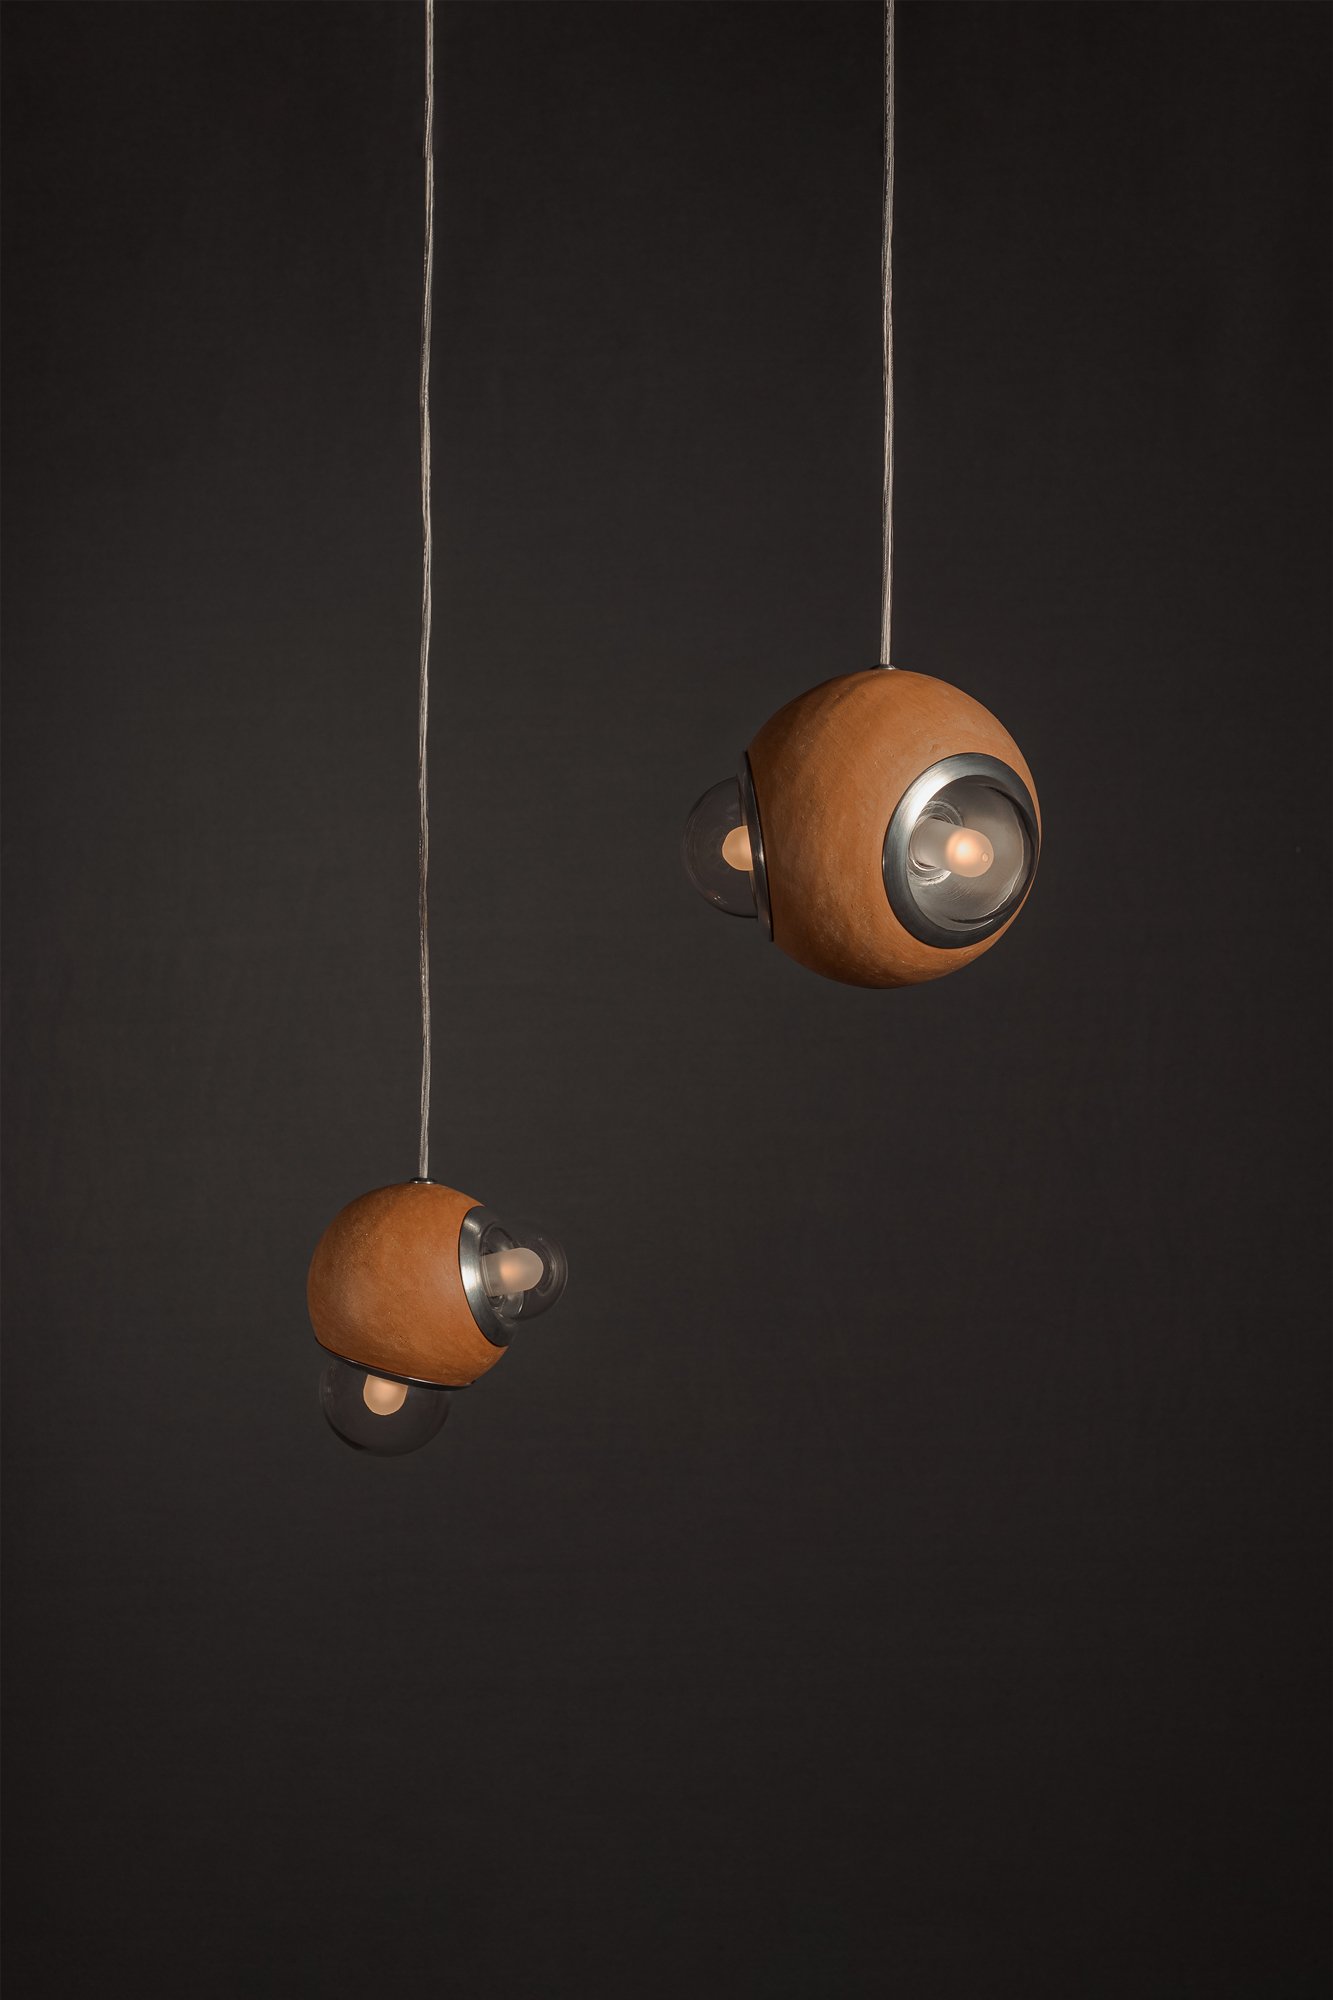 Lámpara colgante HUMO 18 color barro natural con difusores de vidrio y detalle de aluminio diseñada por Bandido Studio